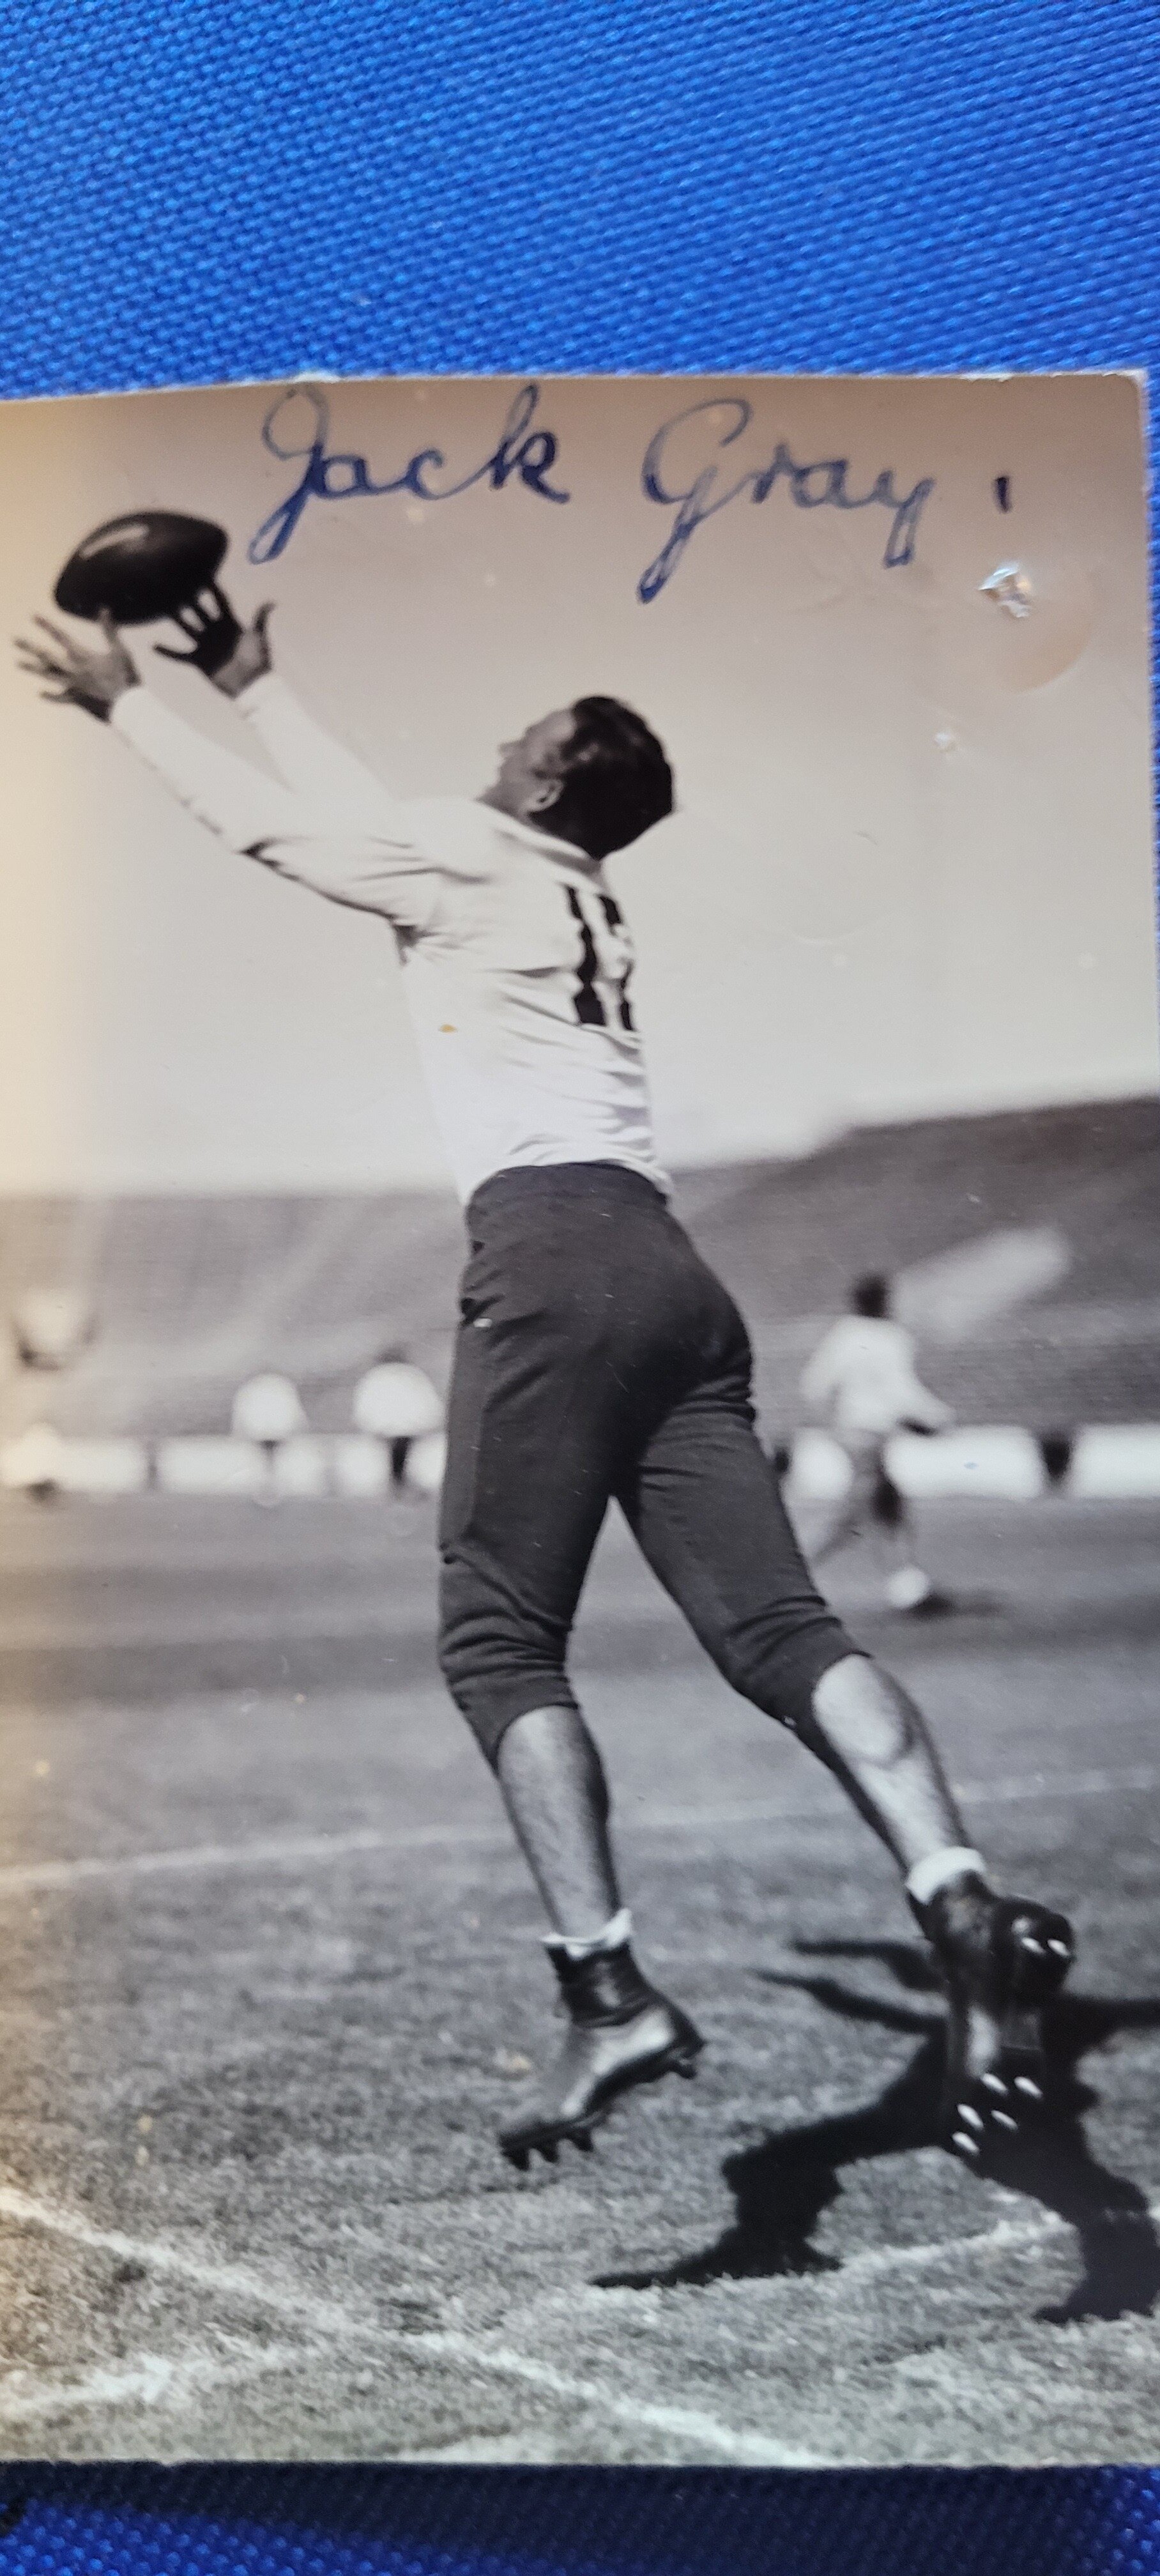 1924 Jack Gray football.jpg